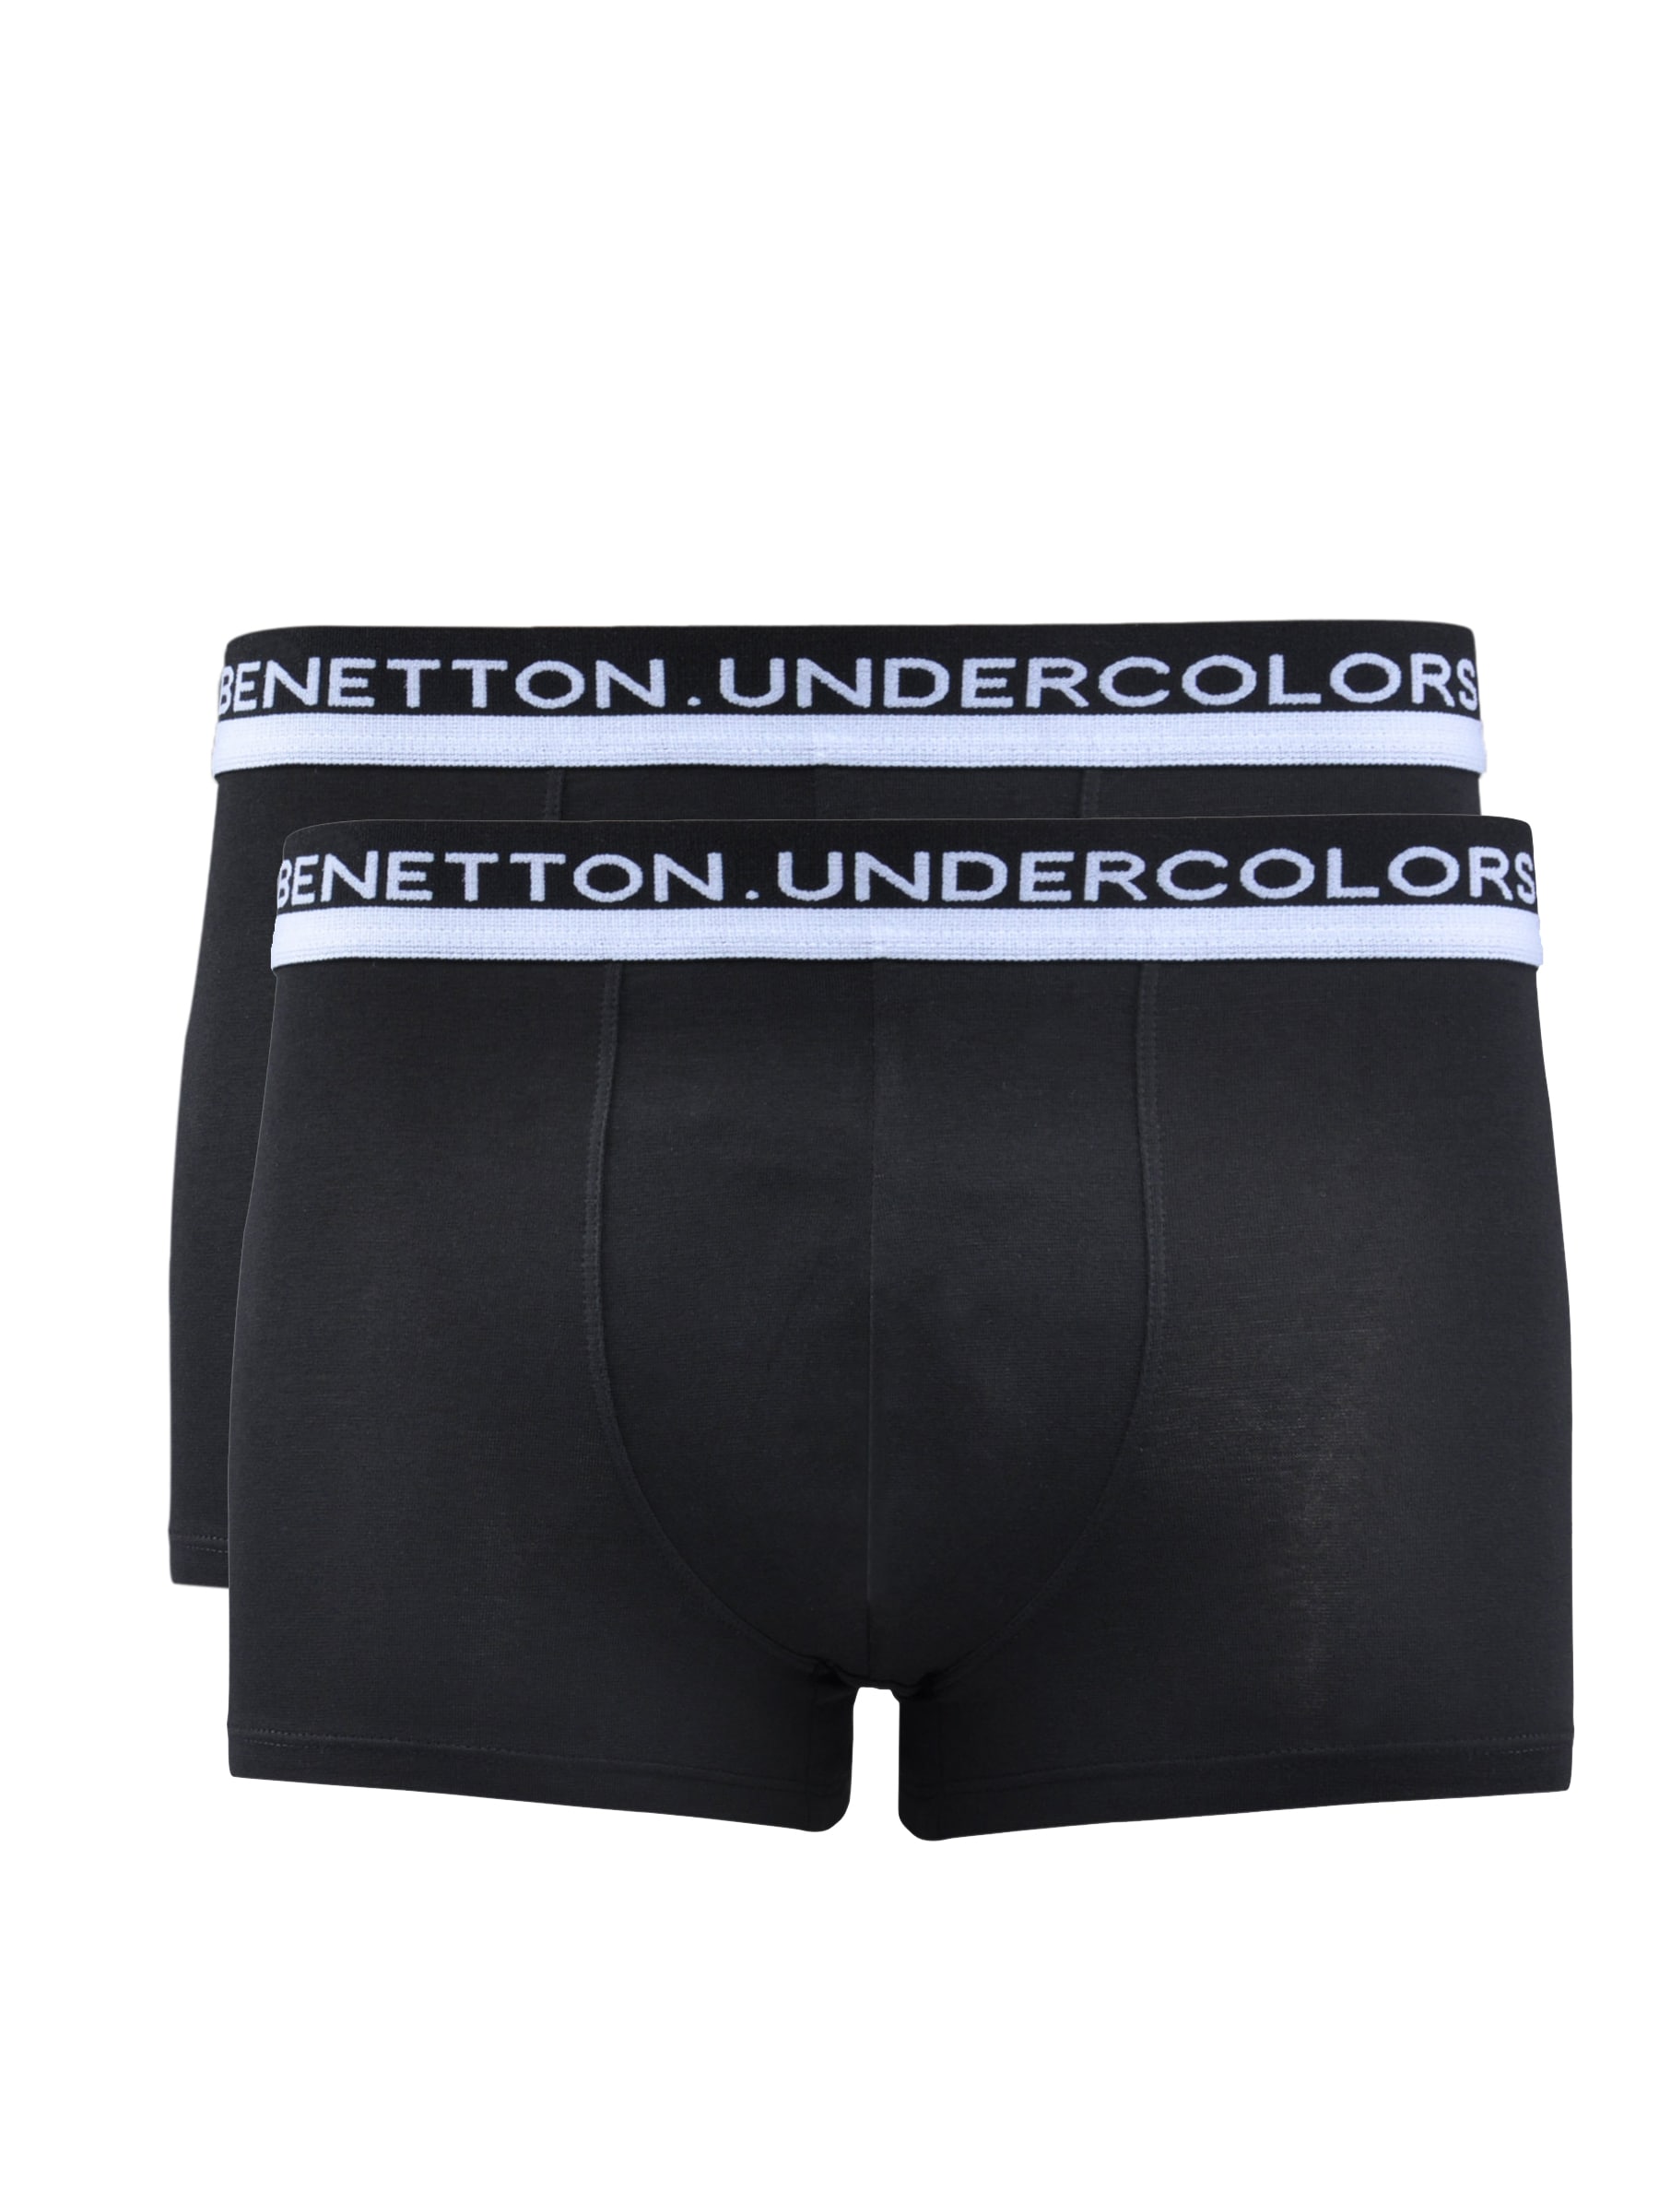 Undercolors of Benetton Men Pack of 2 Black Boxer Trunks